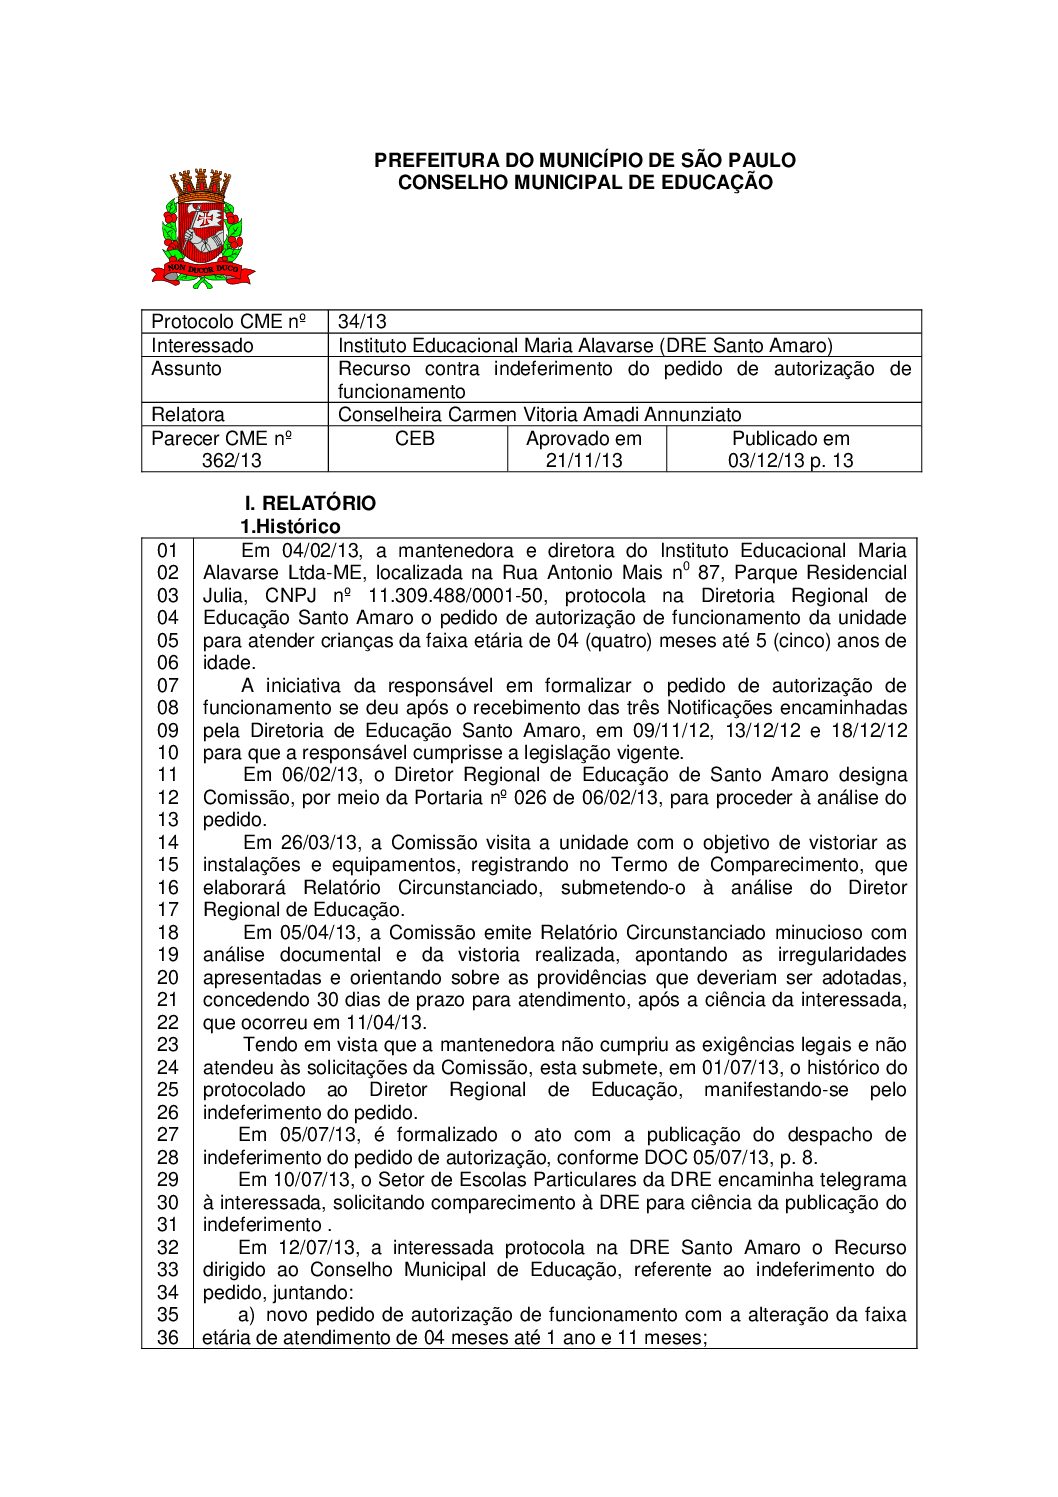 Parecer CME nº 362/2013 - Instituto Educacional Maria Alavarse (DRE Santo Amaro) - Recurso contra indeferimento do pedido de autorização de funcionamento 